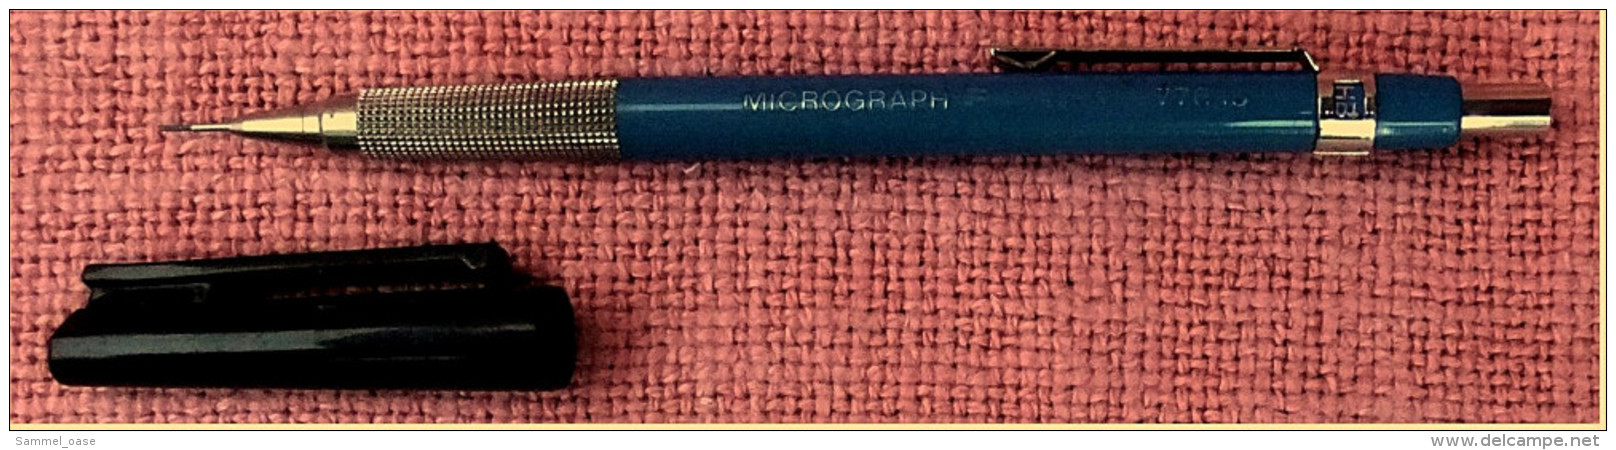 Seltener Staedtler Micrograph F 77015 Bleistift / Druckbleistift - 0,5 Mm - Blau - Penne